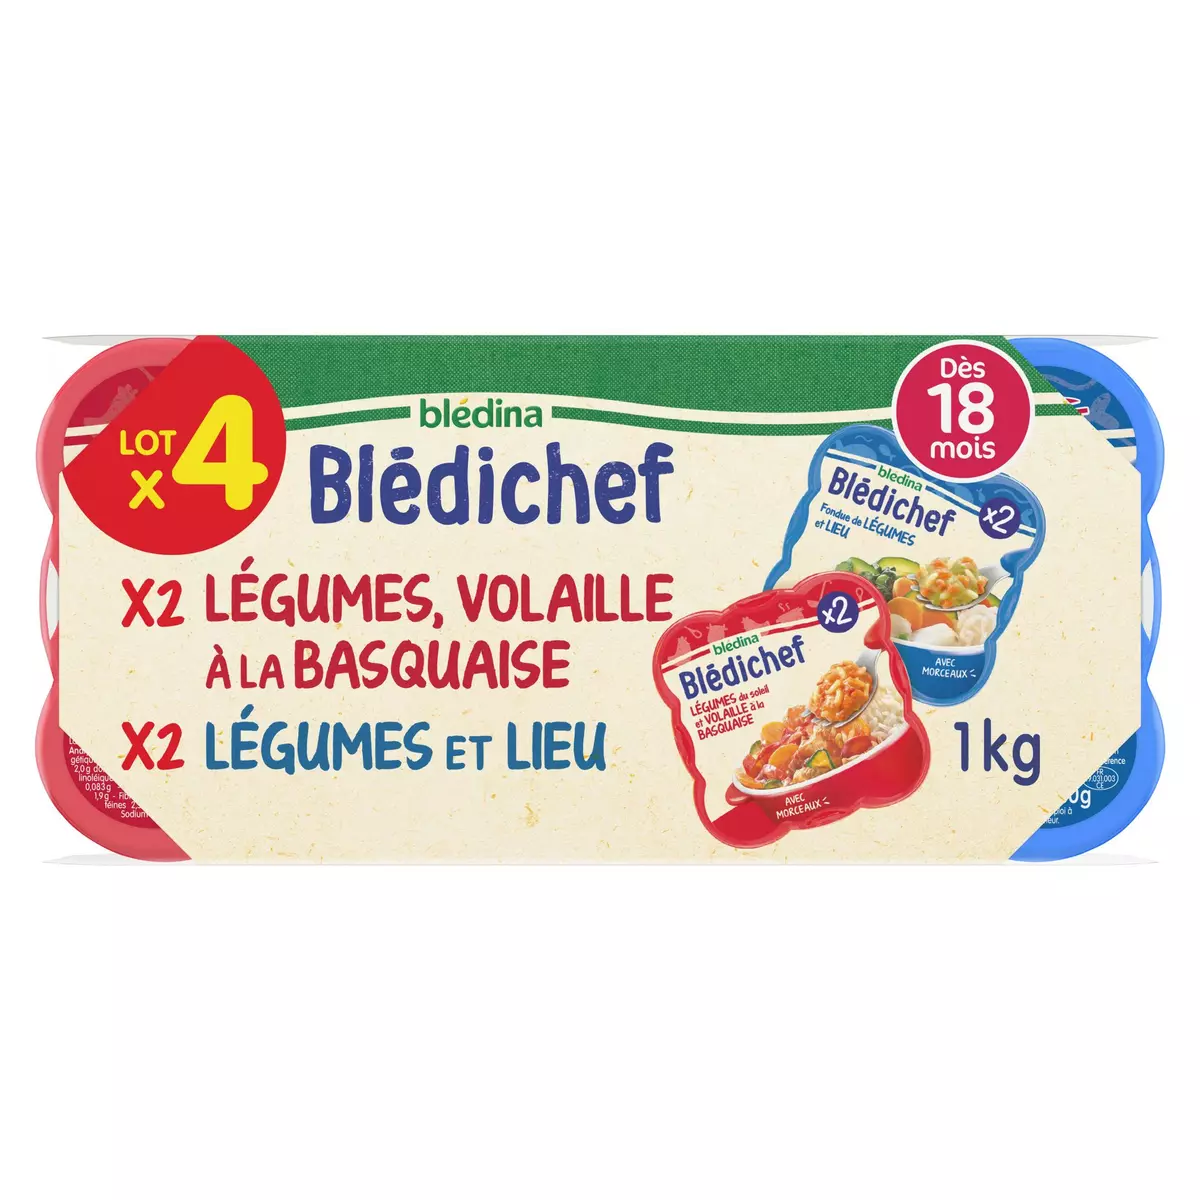 BLEDINA Blédichef assiettes légumes volaille lieu dès 18 mois 4x250g